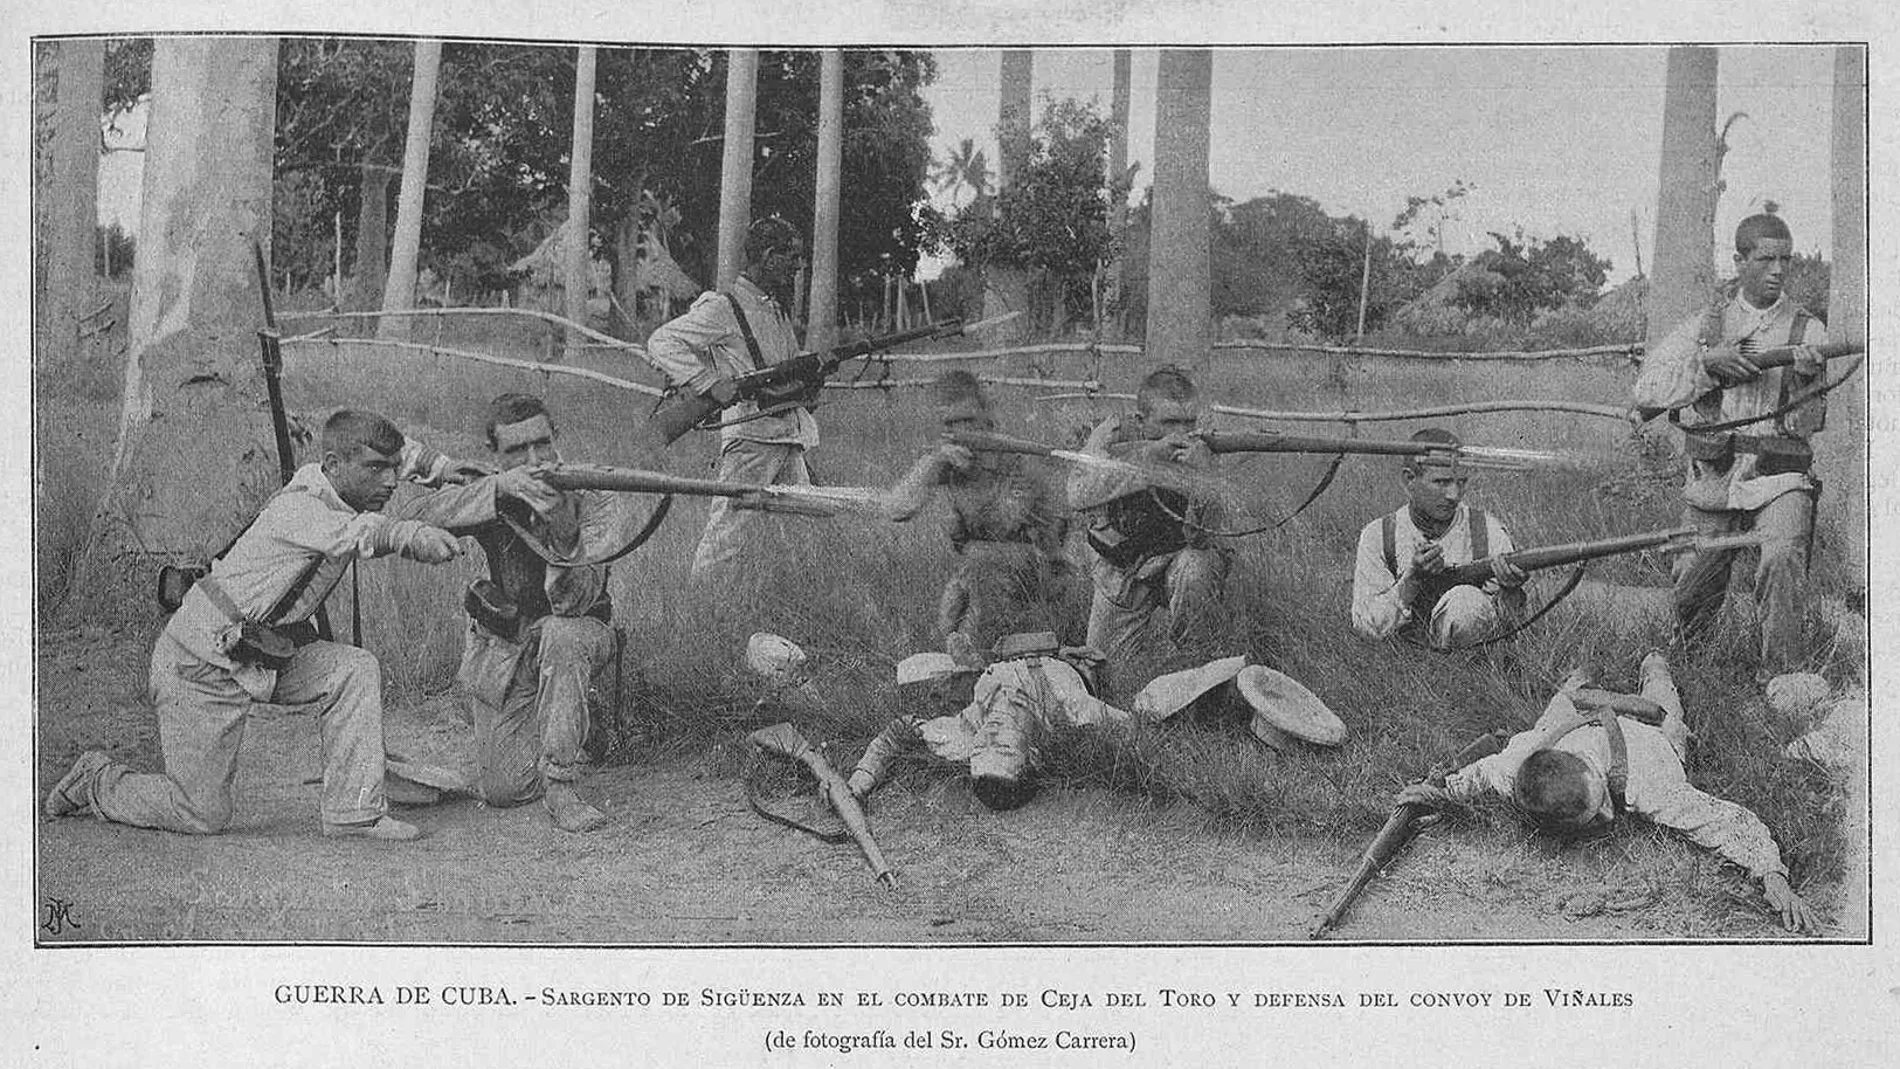 Soldados españoles defienden un convoy en Ceja del Toro, durante la guerra de Cuba de 1895